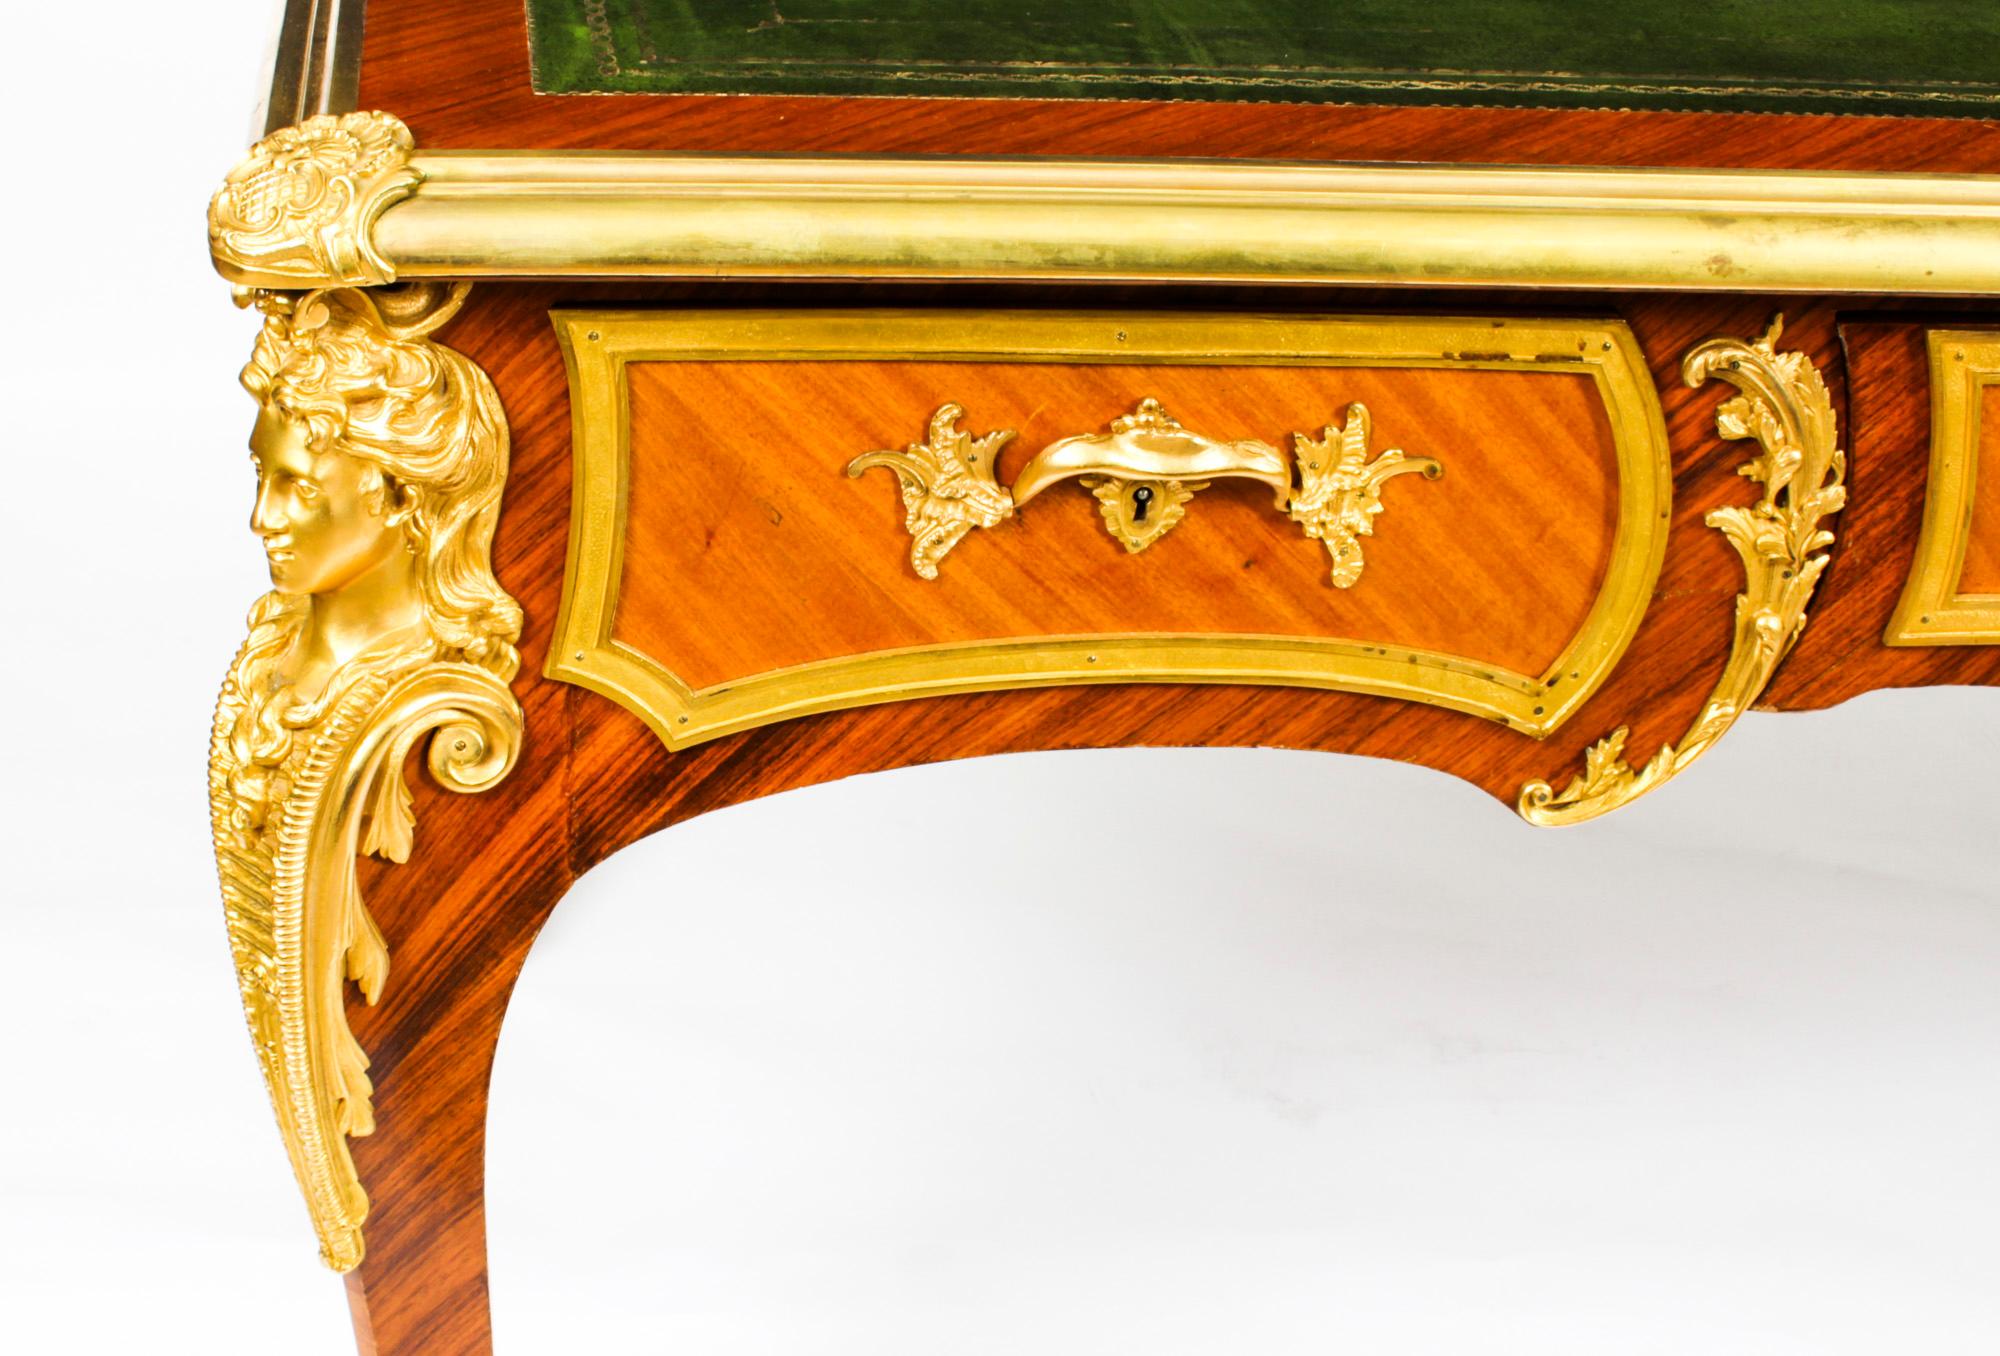 Antique French Louis Revival Ormolu Bureau Plat Desk, 19th C For Sale 14